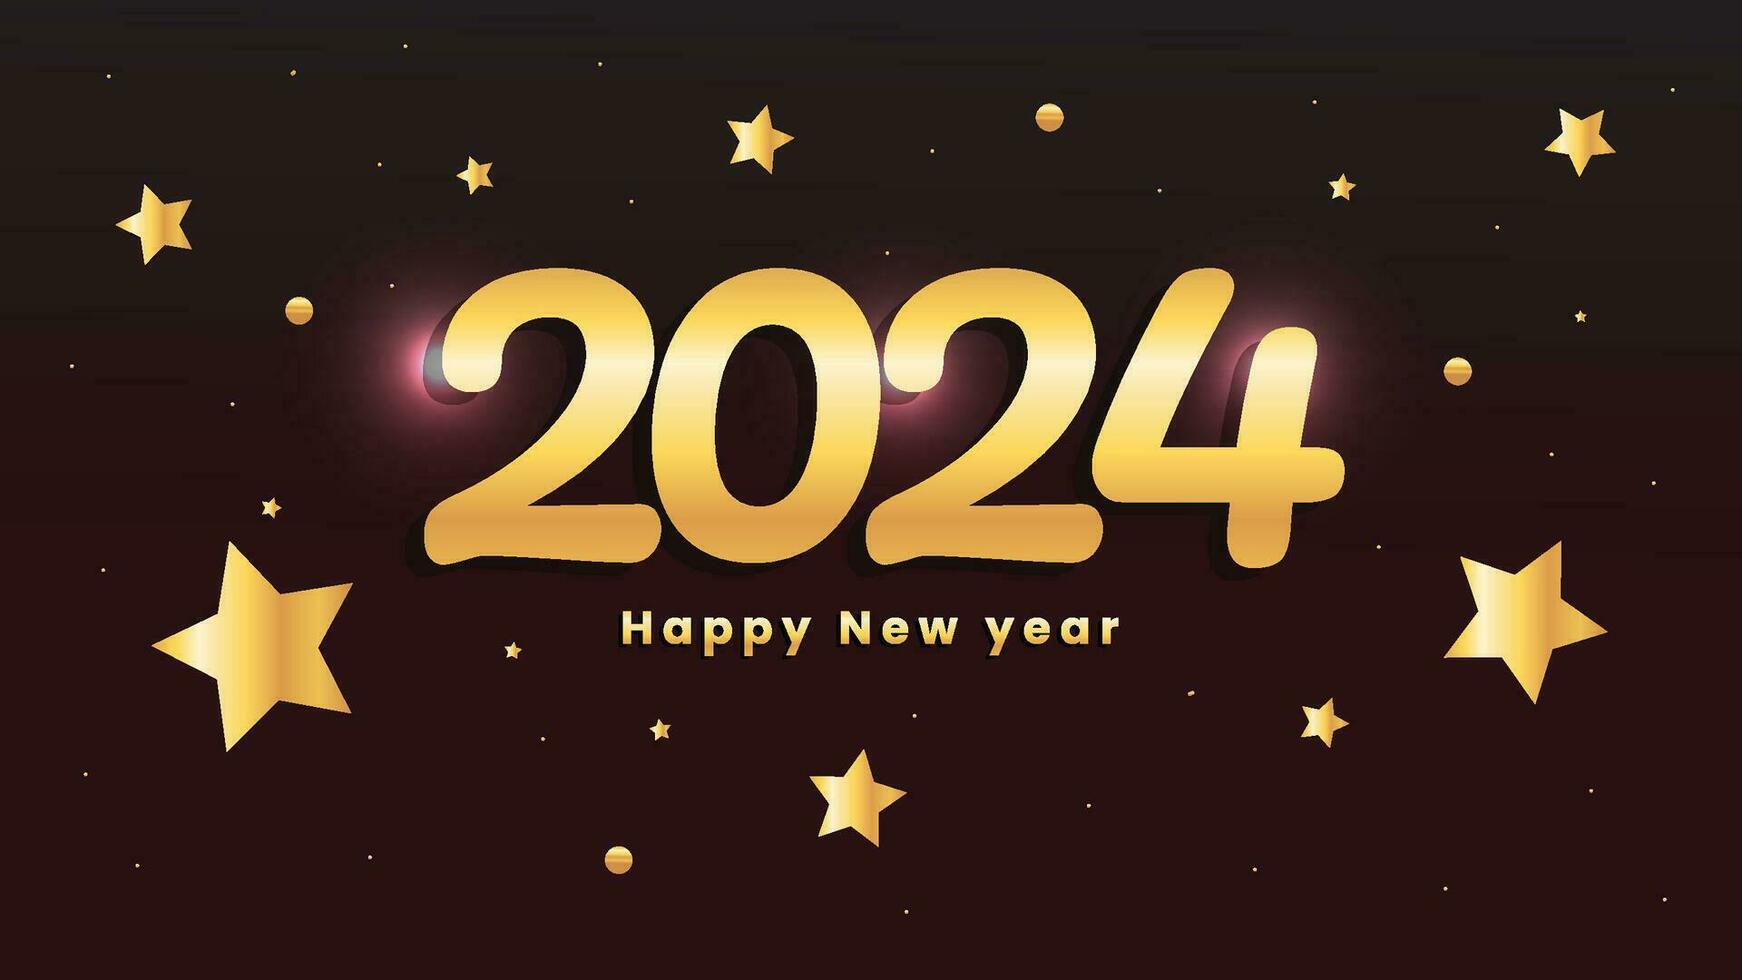 contento nuevo año 2024 antecedentes diseño modelo vector